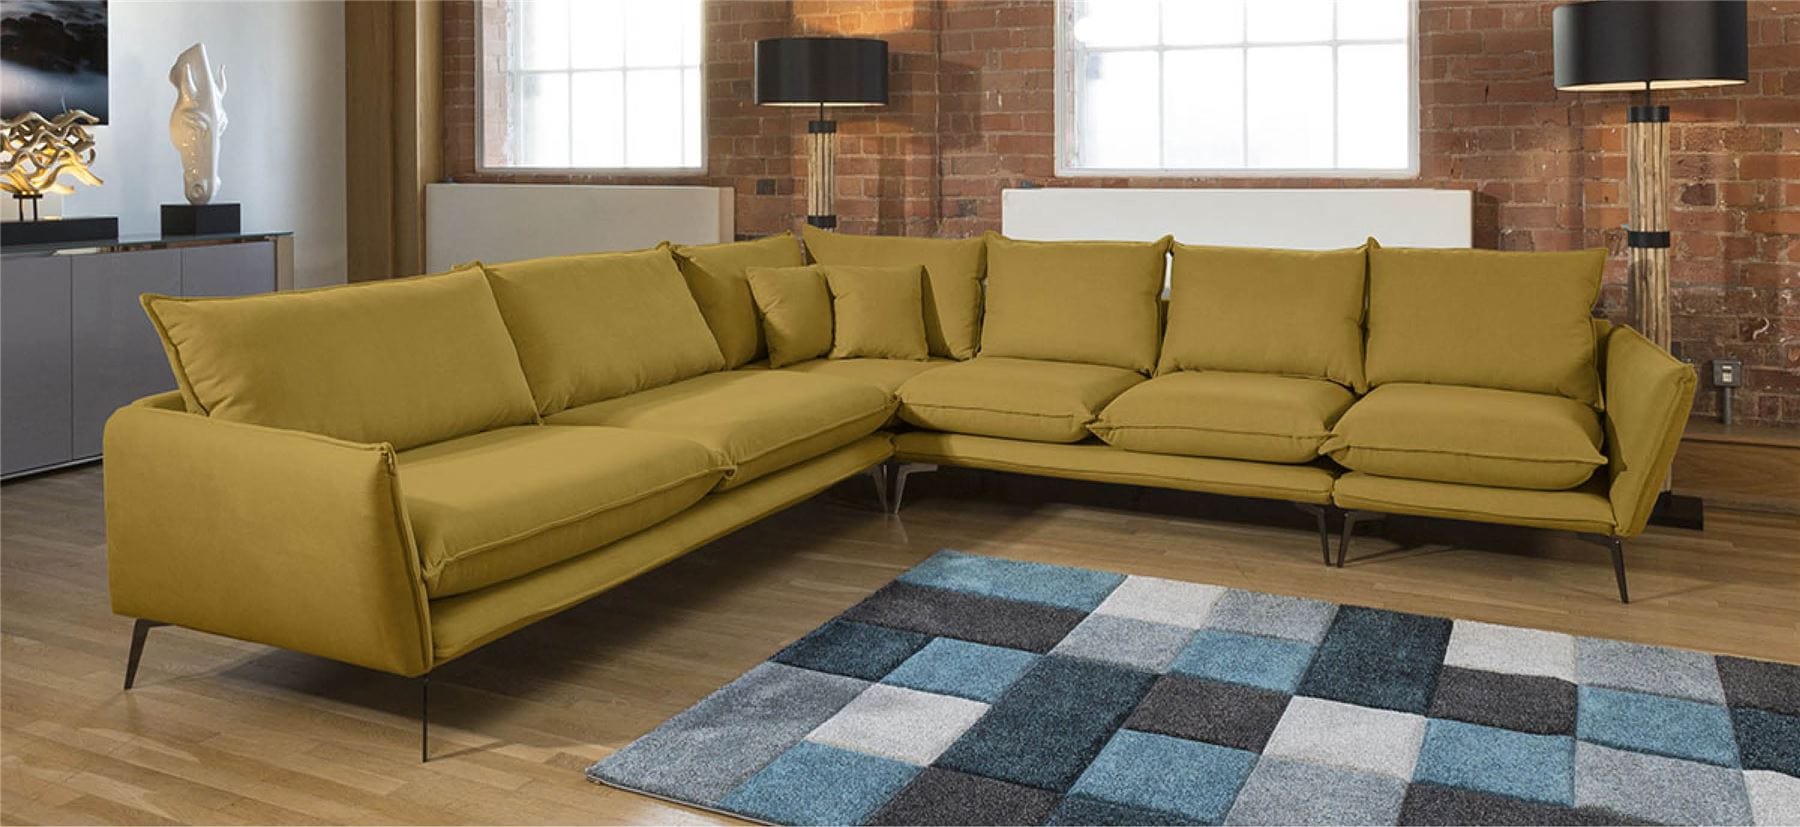 Quatropi Beautiful Rachel Large Corner Modular Sofa Many Fabrics 3.2 x 3.05m